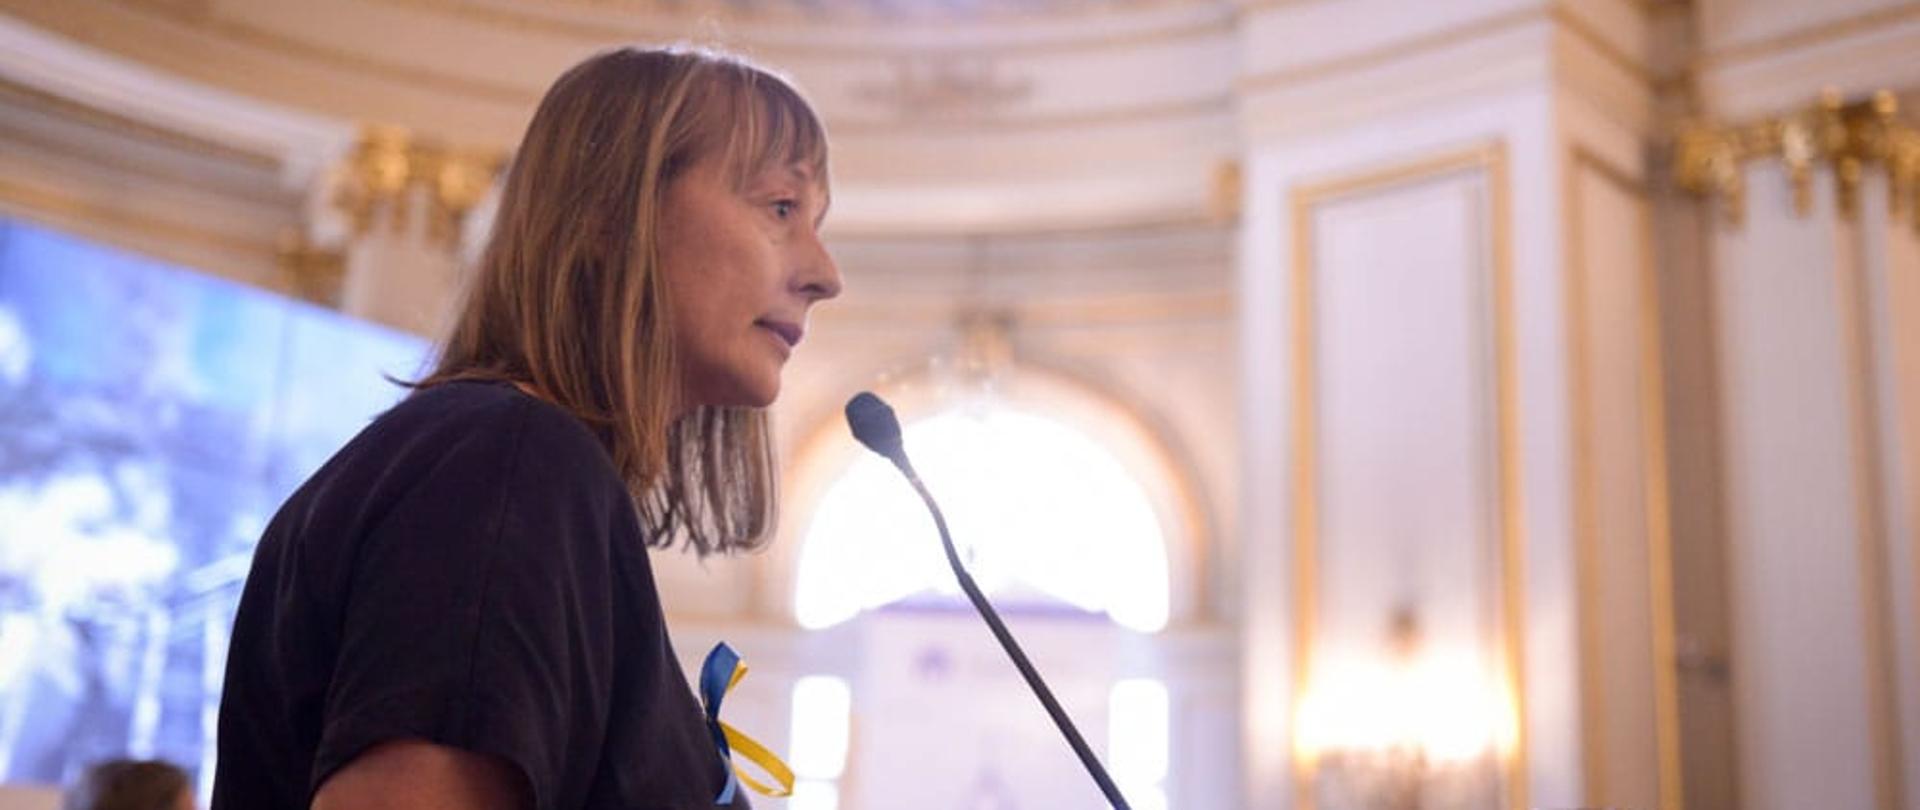 Aleksandra Piątkowska, Ambasador RP w Argentynie wystąpiła na forach poparcia dla Ukrainy.
